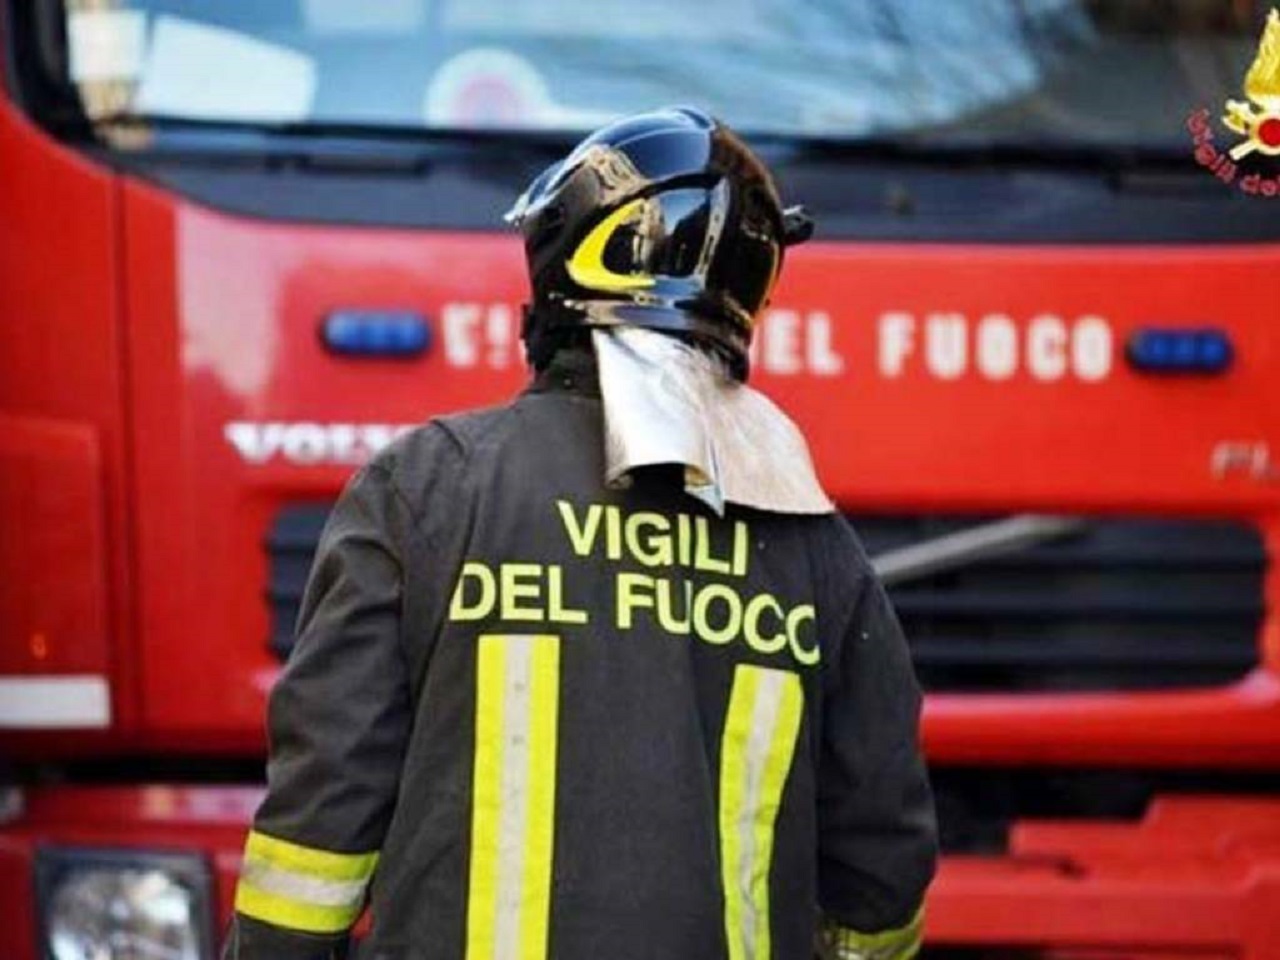 Incidente con auto in fiamme a Palermo: diversi feriti, chiusa corsia